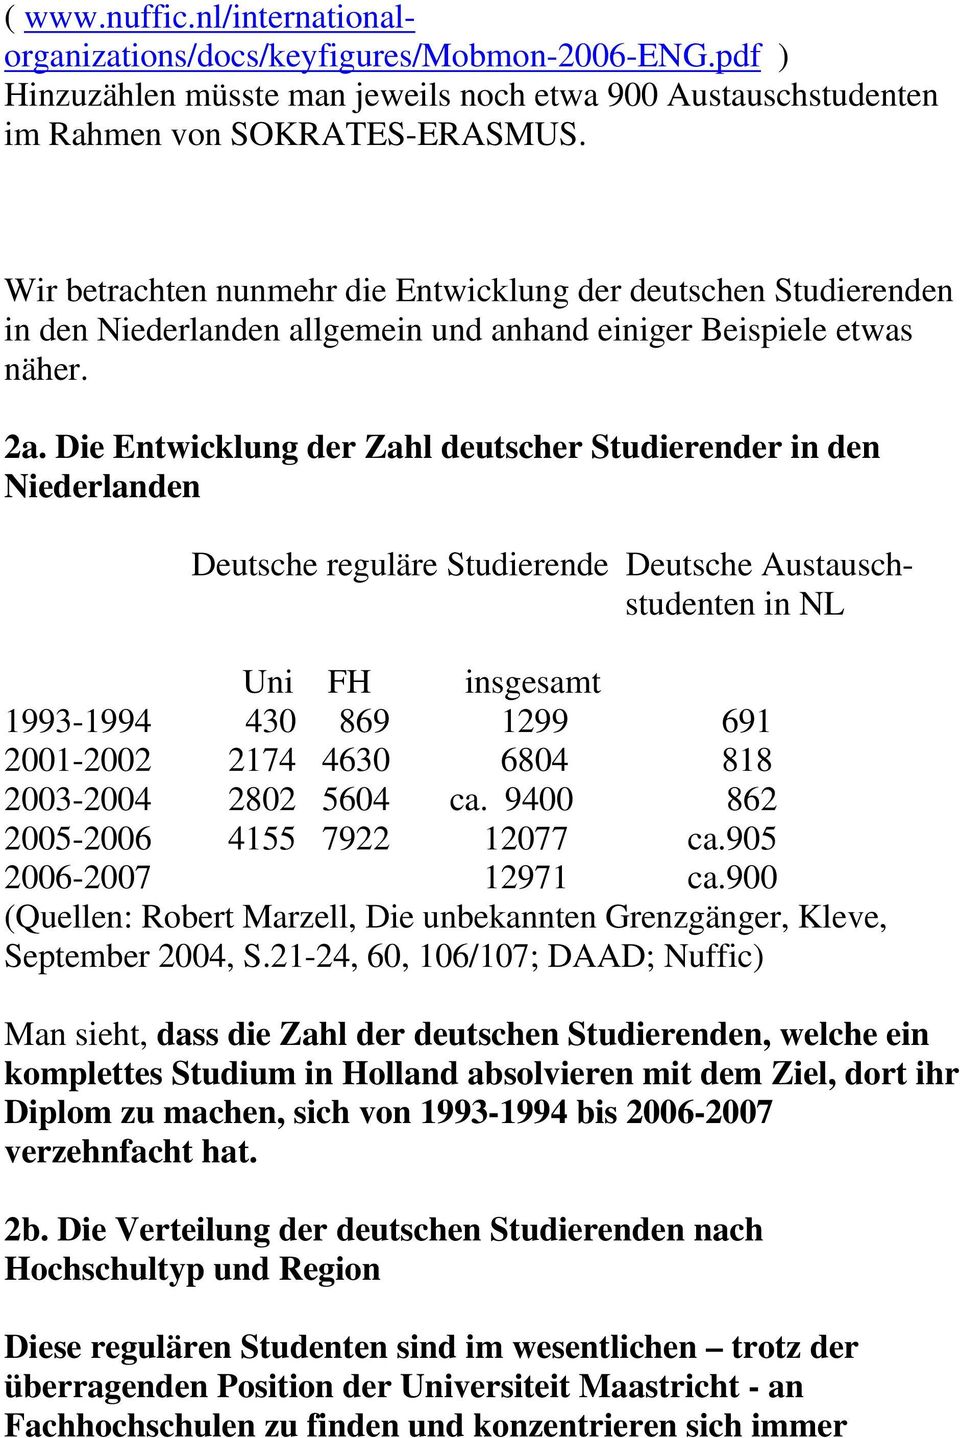 Die Entwicklung der Zahl deutscher Studierender in den Niederlanden reguläre Studierende Austauschstudenten in NL Uni FH insgesamt 1993-1994 430 869 1299 691 2001-2002 2174 4630 6804 818 2003-2004